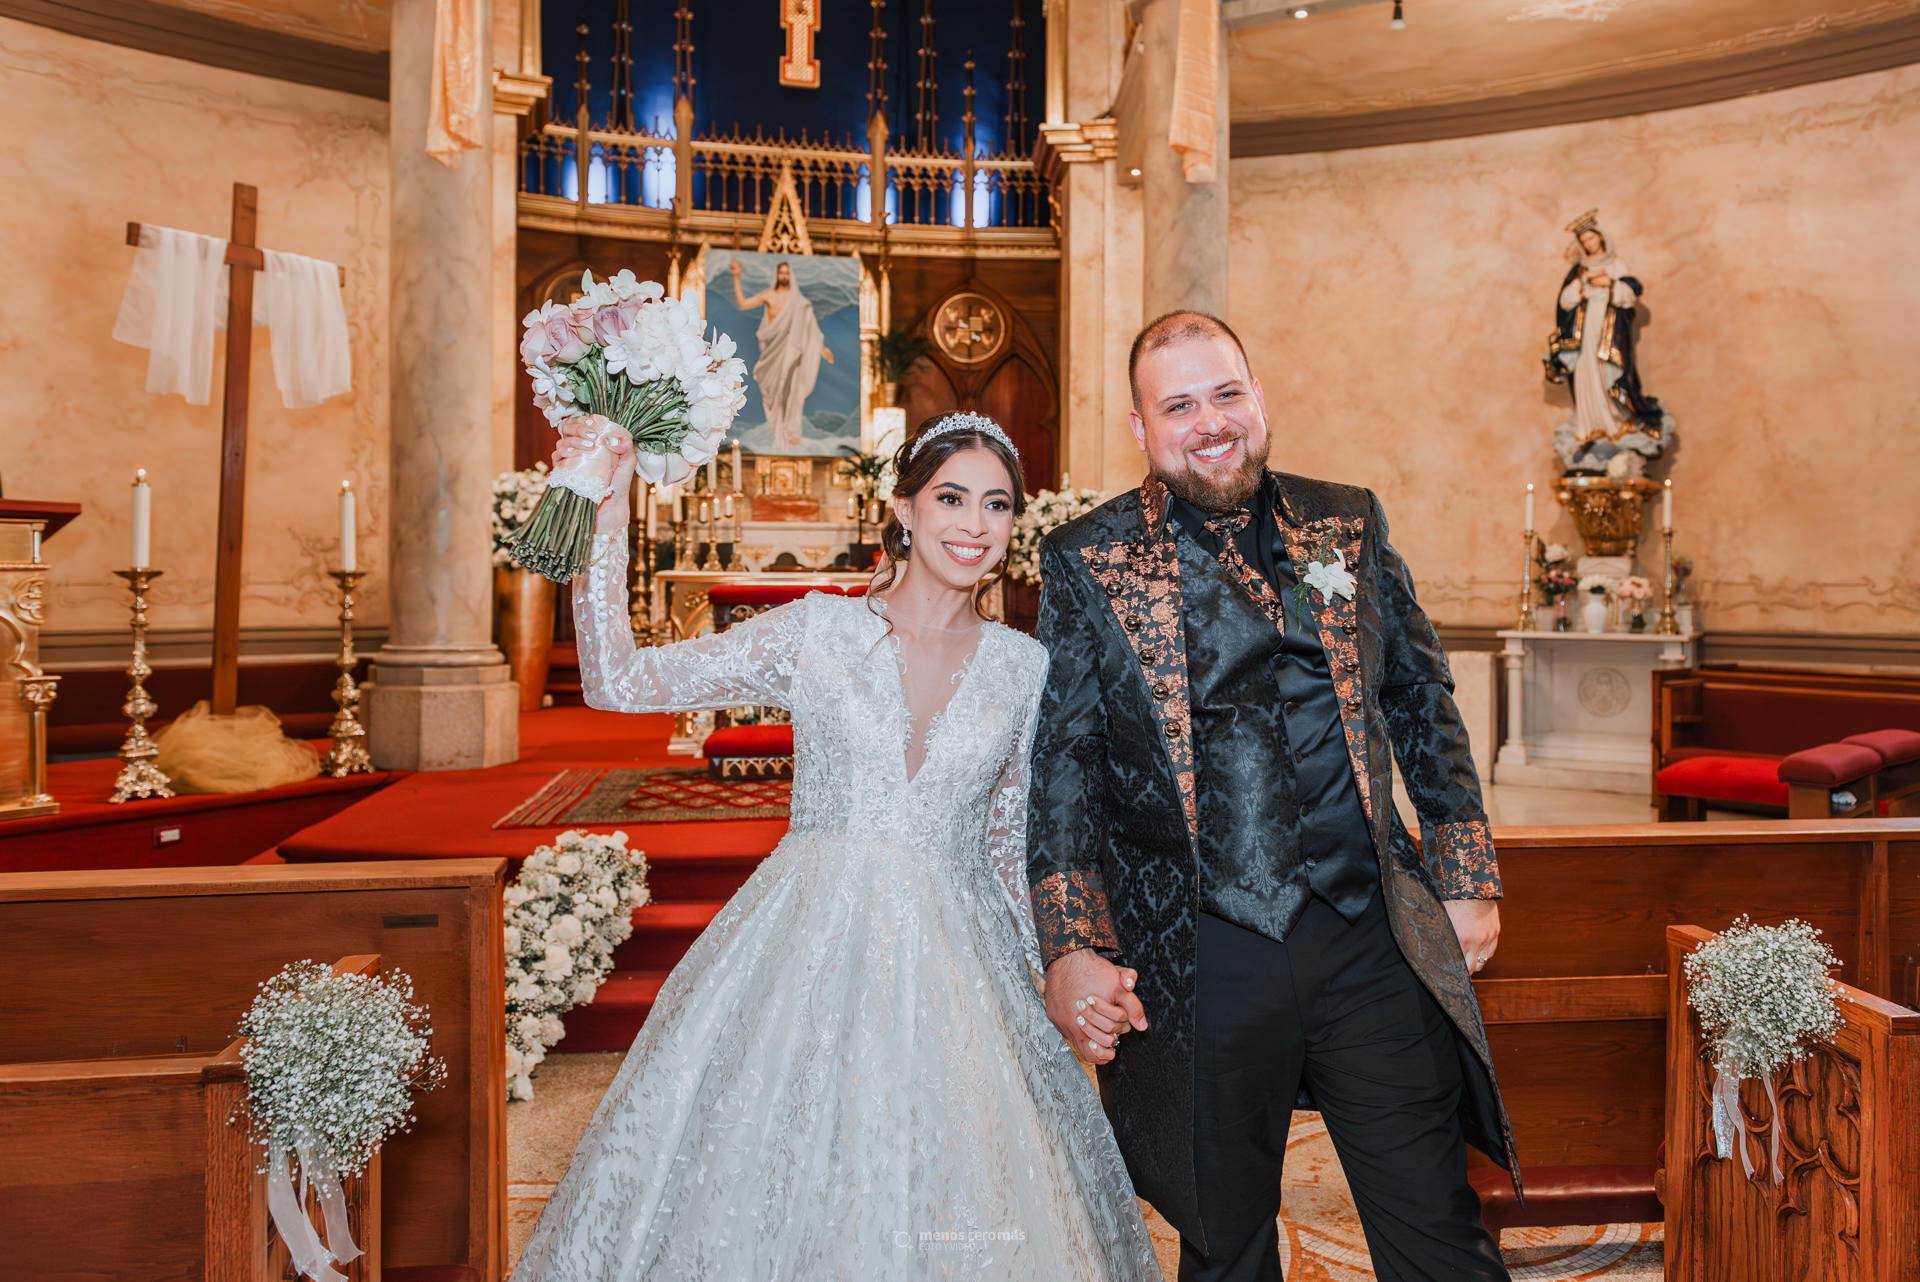 Fotos de la boda de Evelyn y Luis saliendo de la iglesia Expiatorio San Luis Gonzaga después de su boda, para luego dirigirse a la recepción en Las Pampas Eventos.